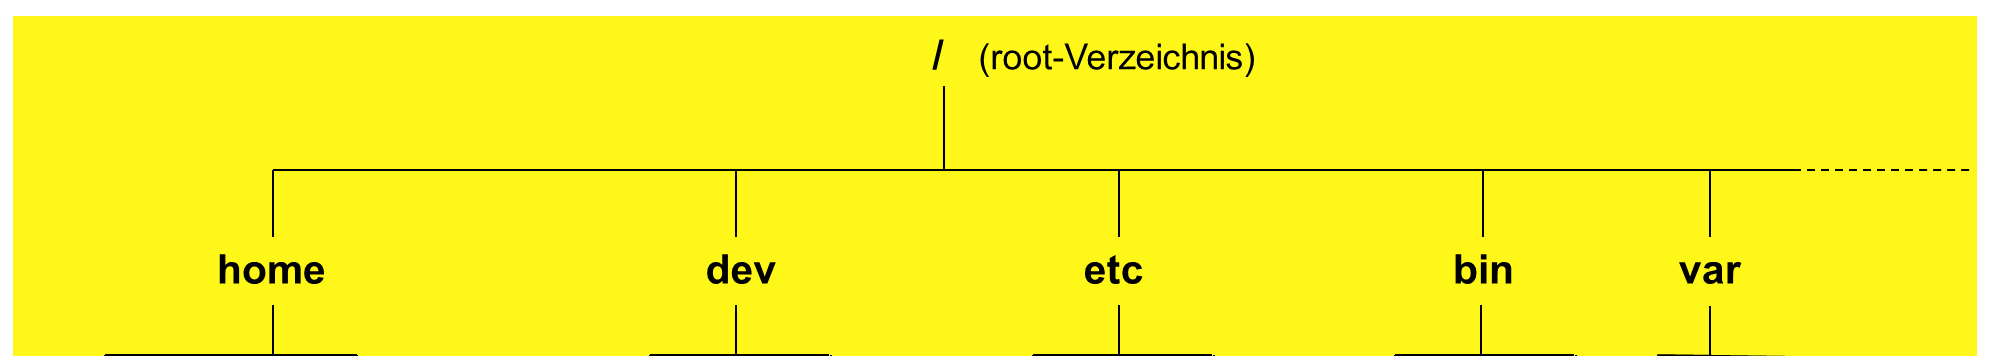 UNIX mit mehreren HD s oder Partitionen: (Verzeichnisbaum nicht